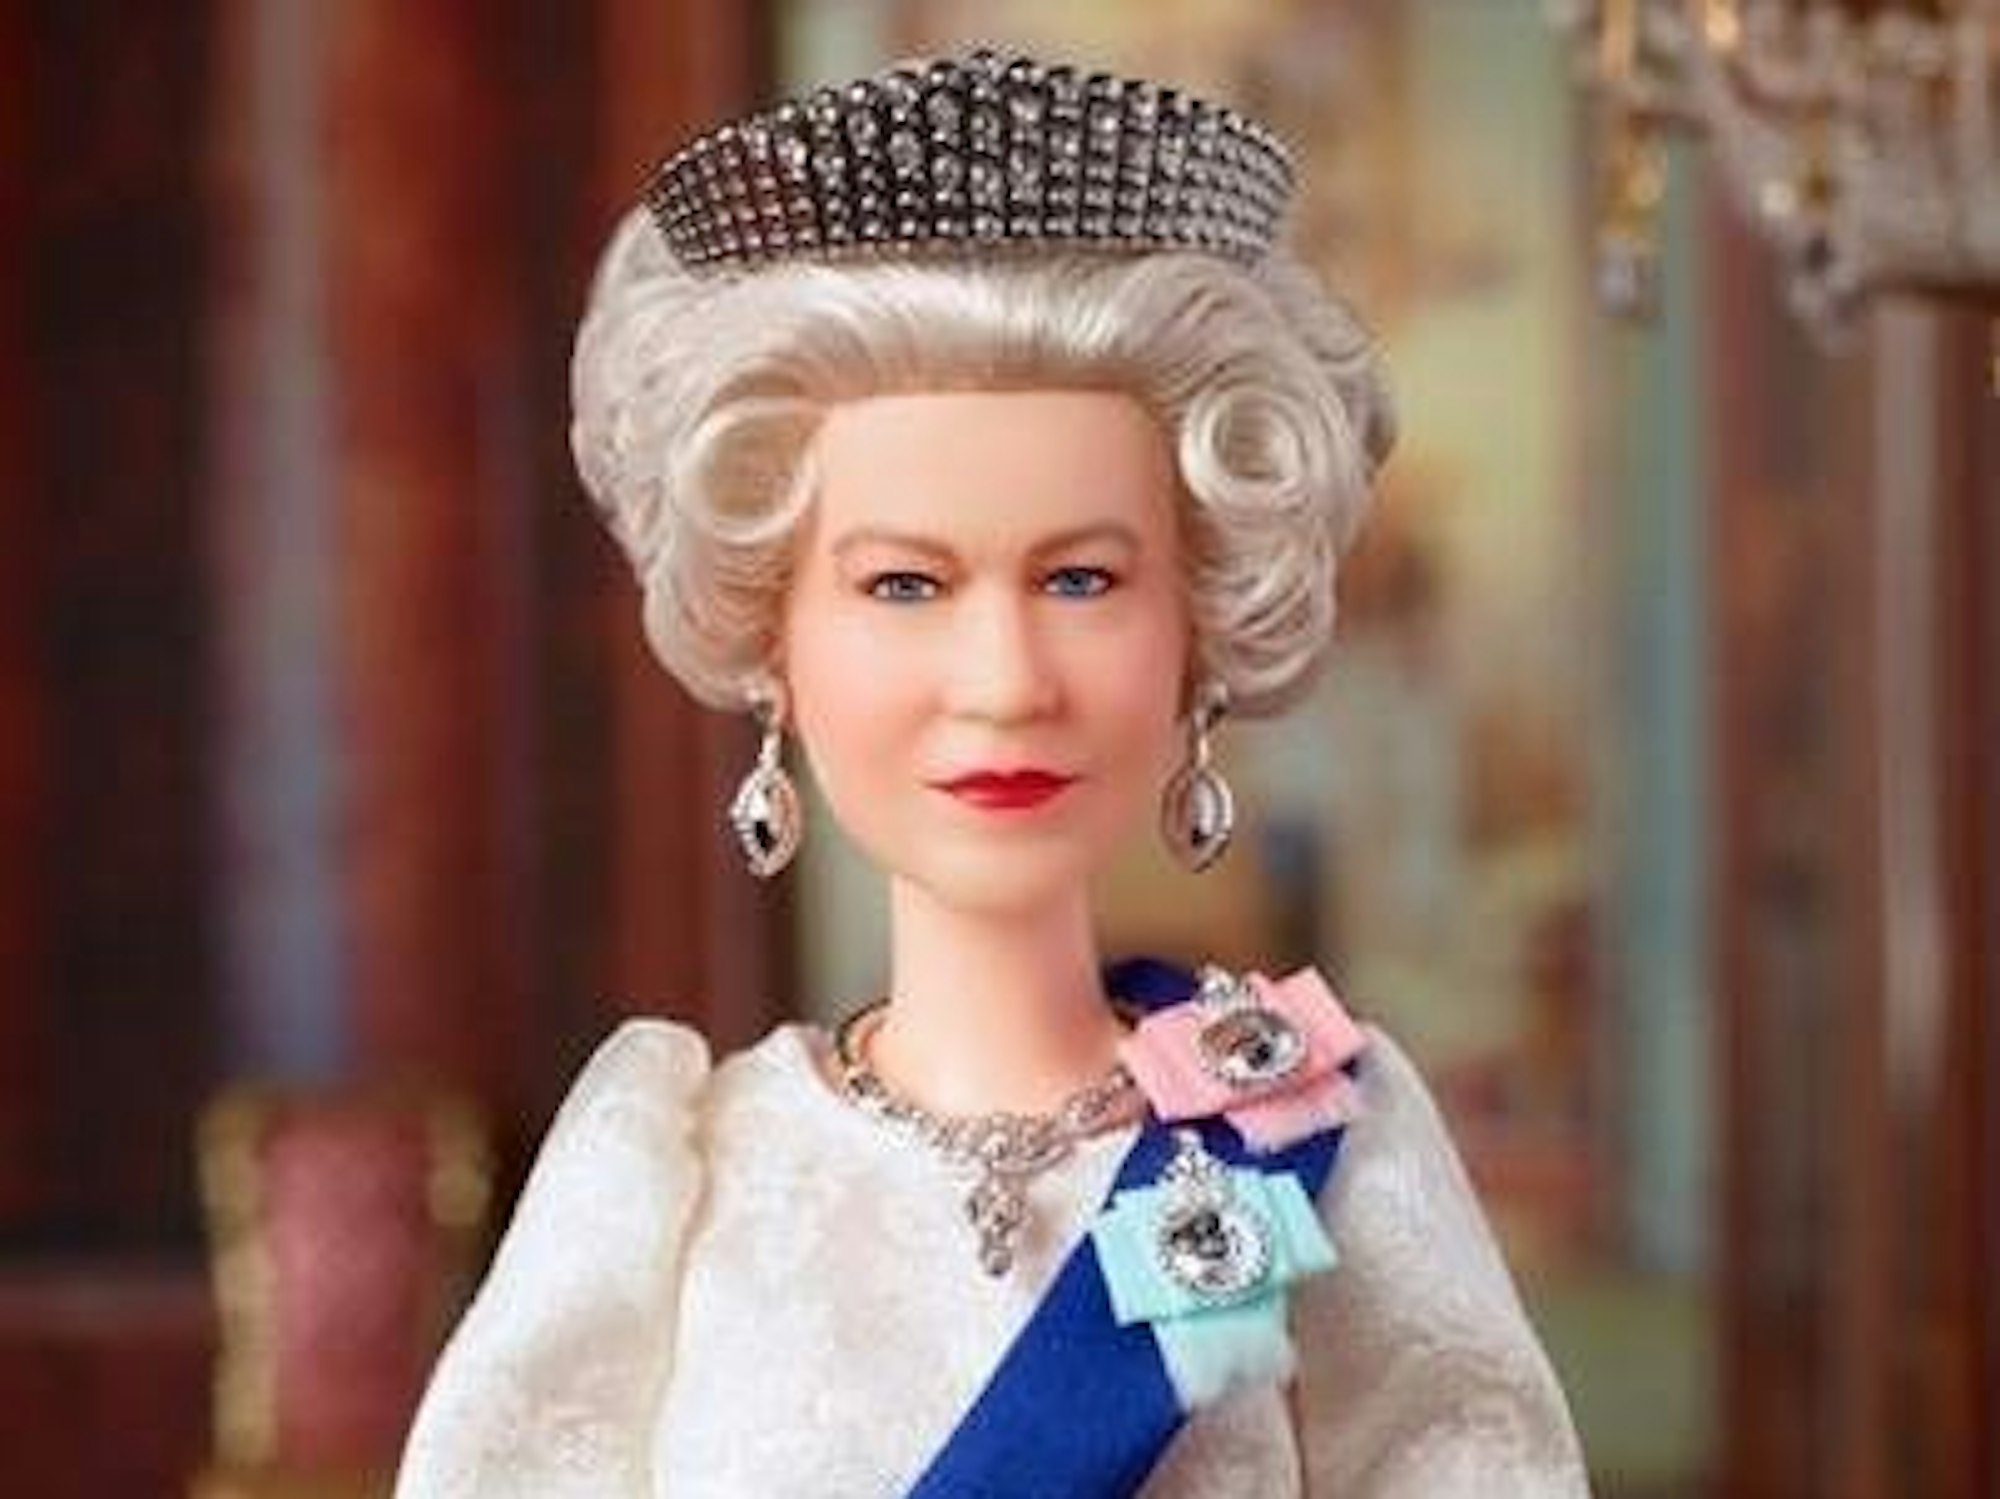 Undatiertes, von Mattel herausgegebenes Handout-Foto der Queen Elizabeth II Barbie-Puppe zum Gedenken an das historische Platin-Jubiläum der Königin 2022.